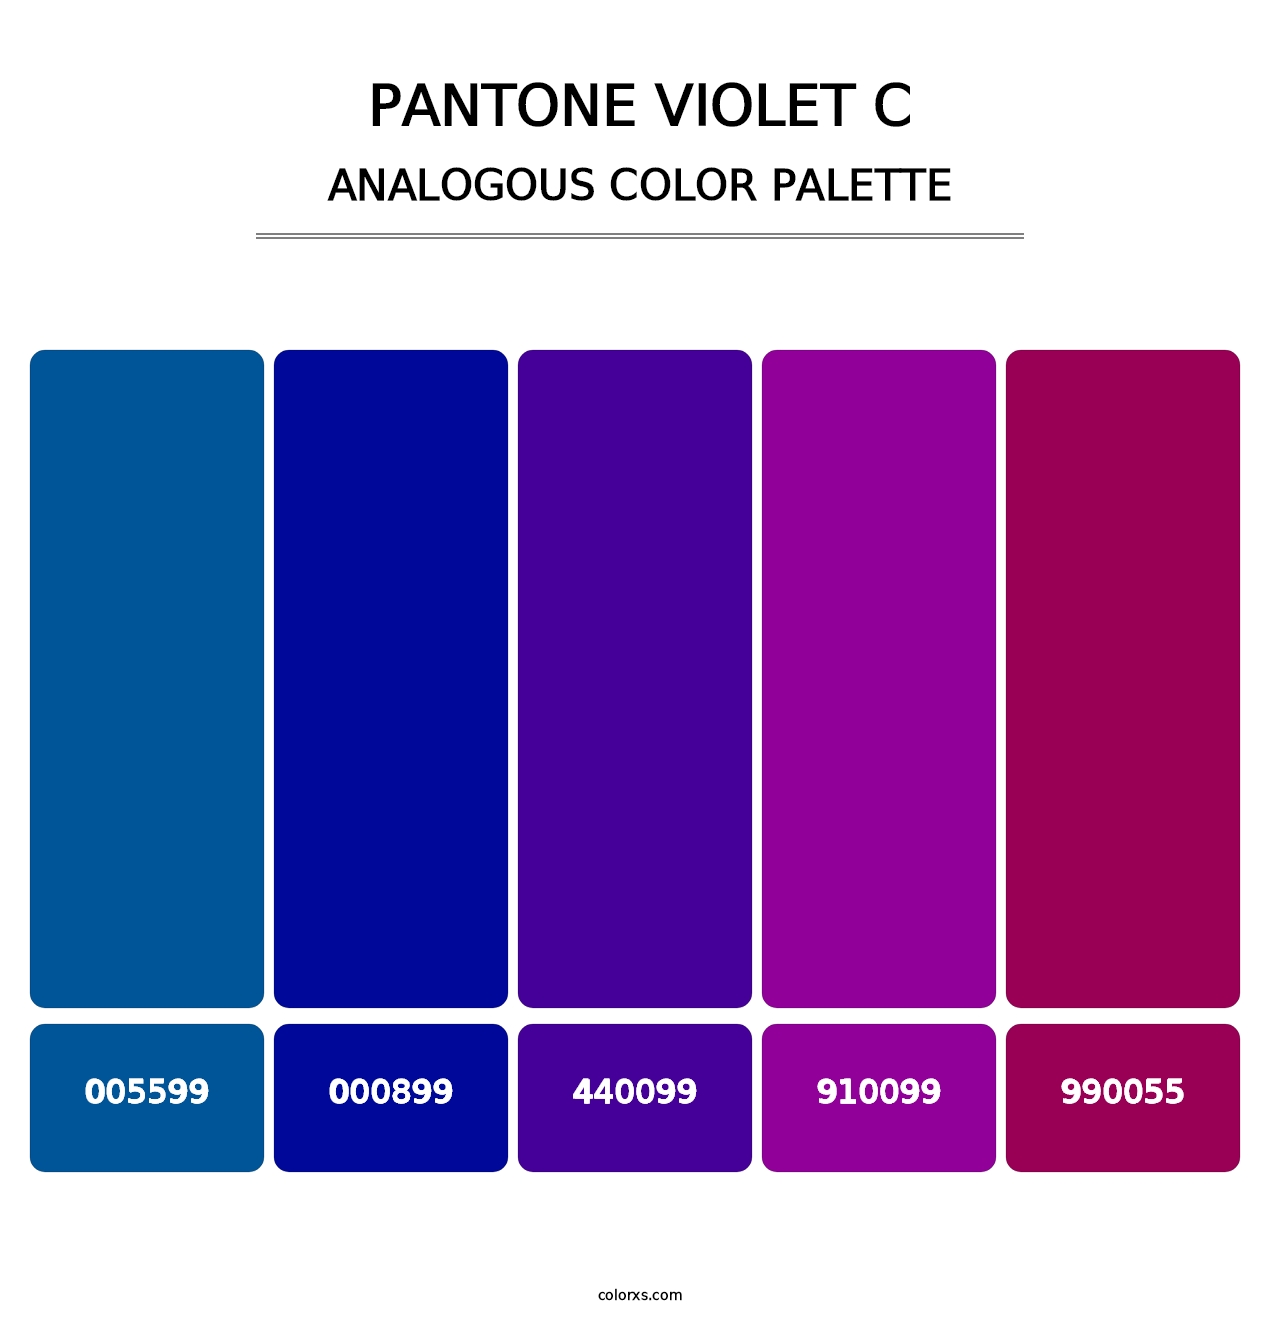 PANTONE Violet C - Analogous Color Palette